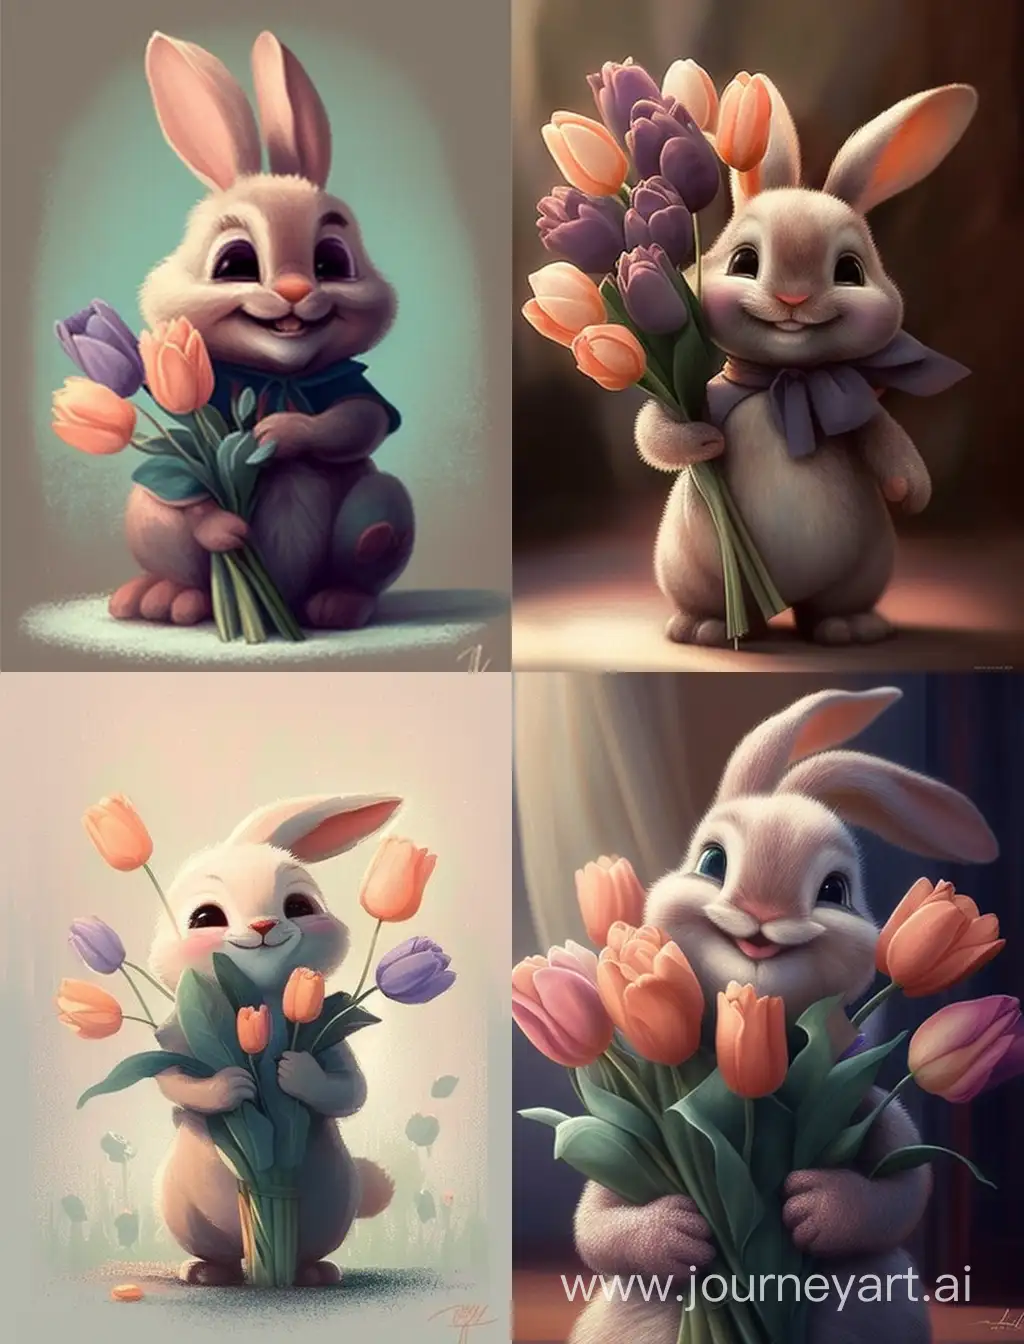 Зайка  улыбается  с букетом тюльпанов в пастельные тонах в стиле Disney Pixar